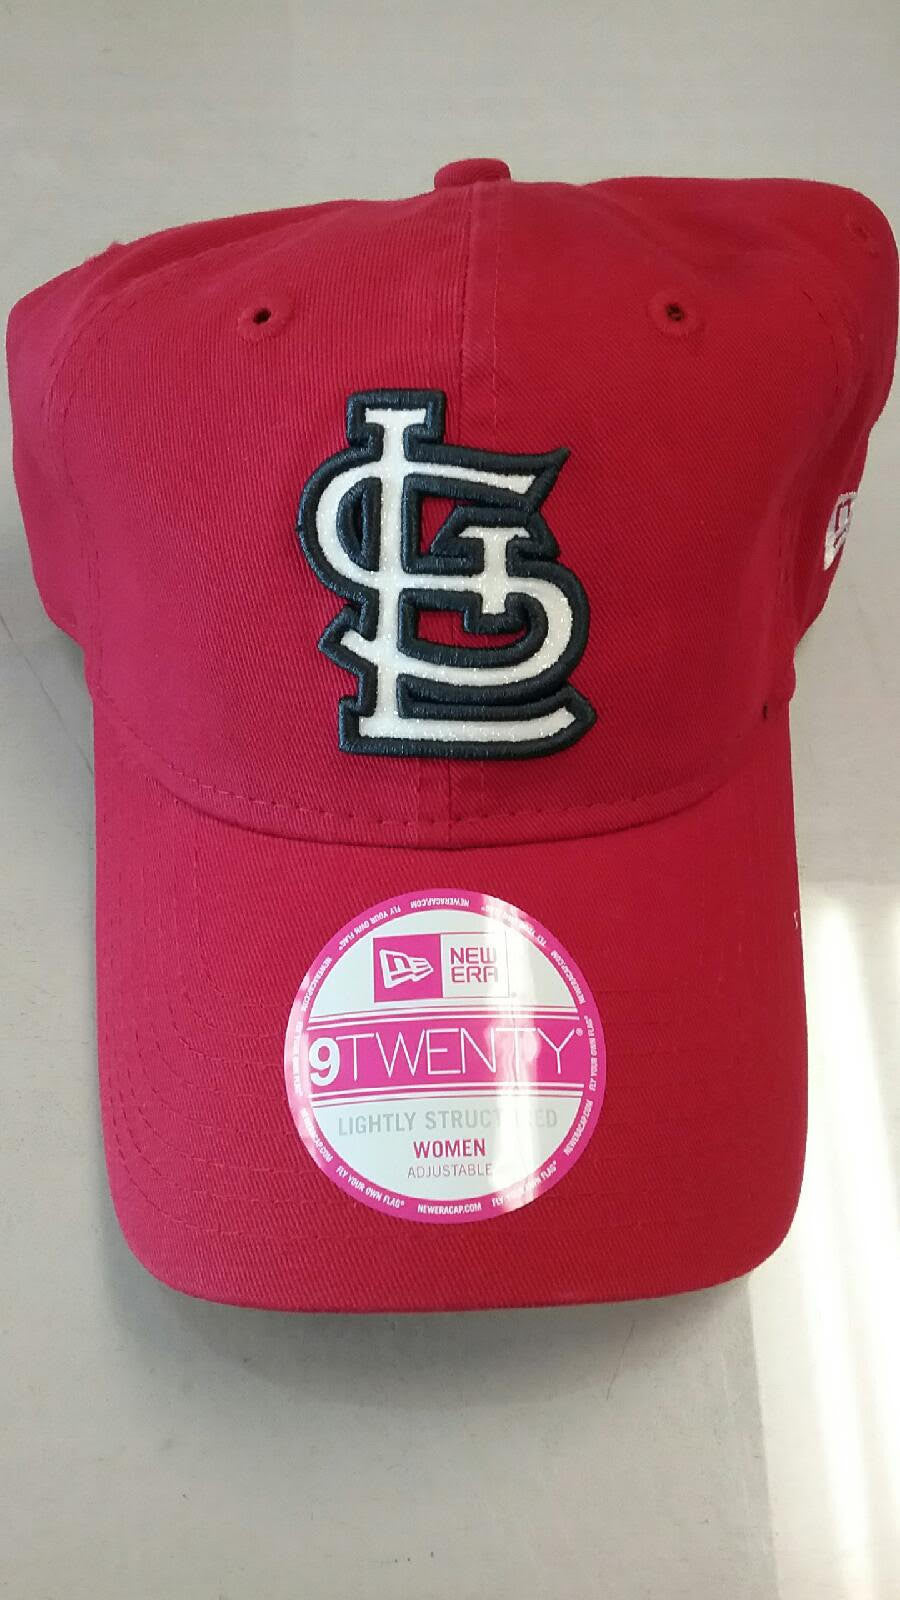 St Louis Cardinals Women's Team Glisten 9TWENTY Adjustable Hat